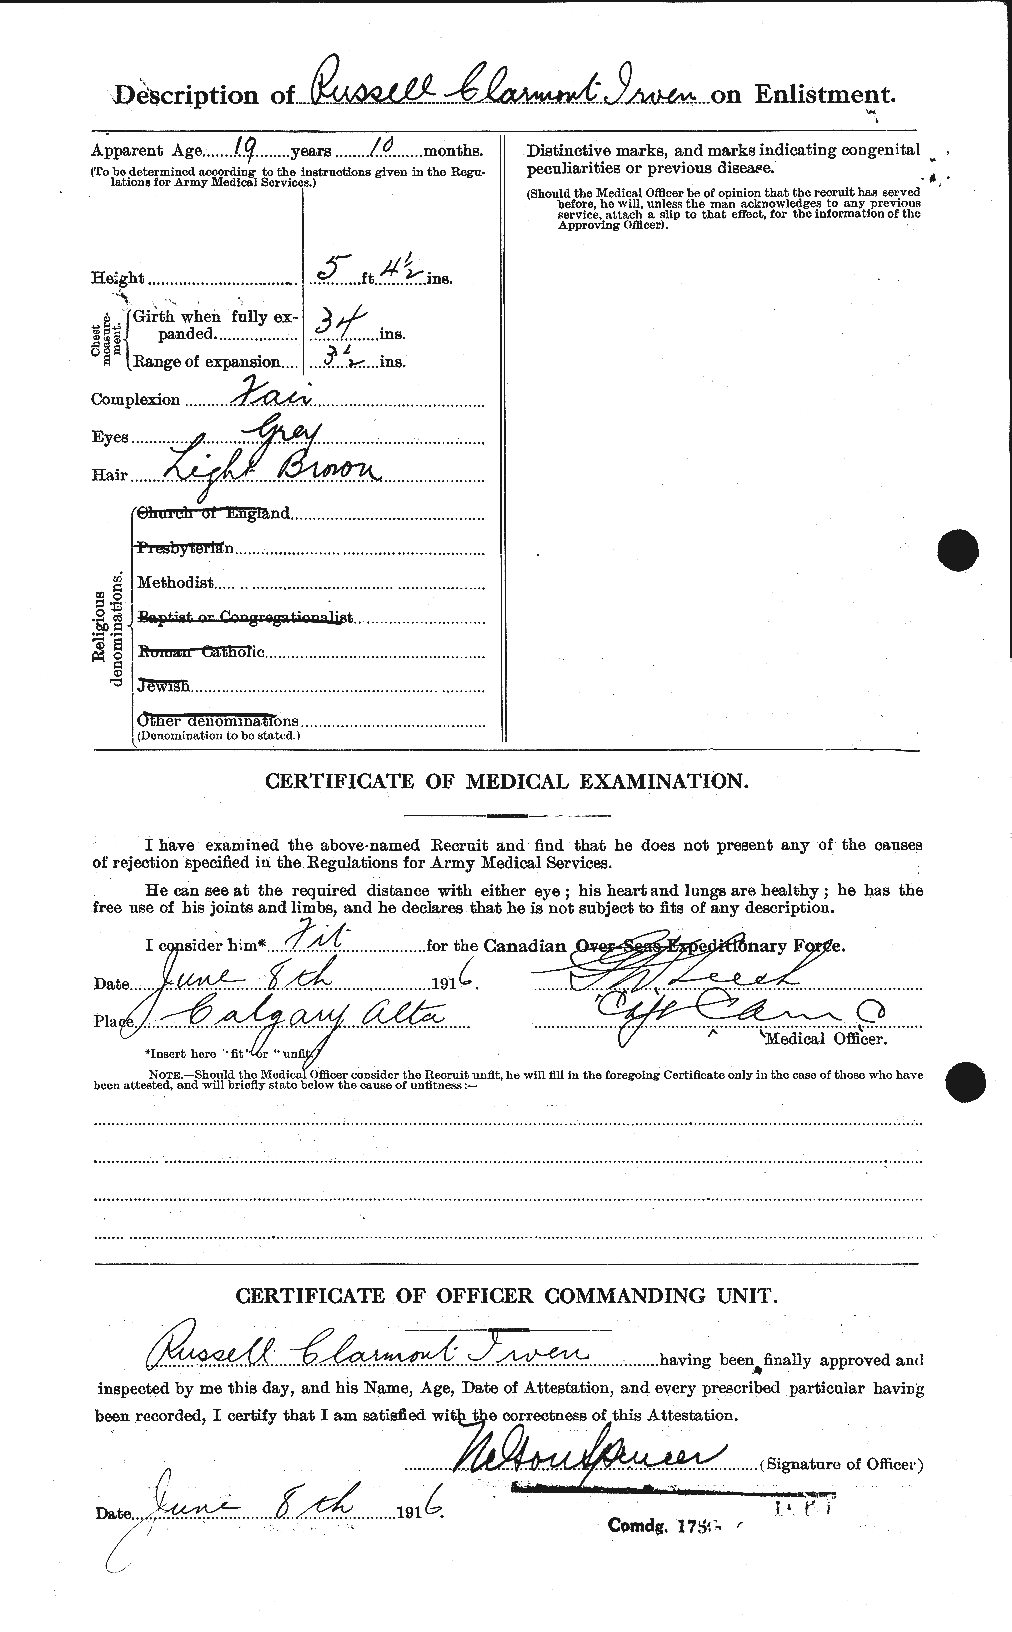 Dossiers du Personnel de la Première Guerre mondiale - CEC 417168b